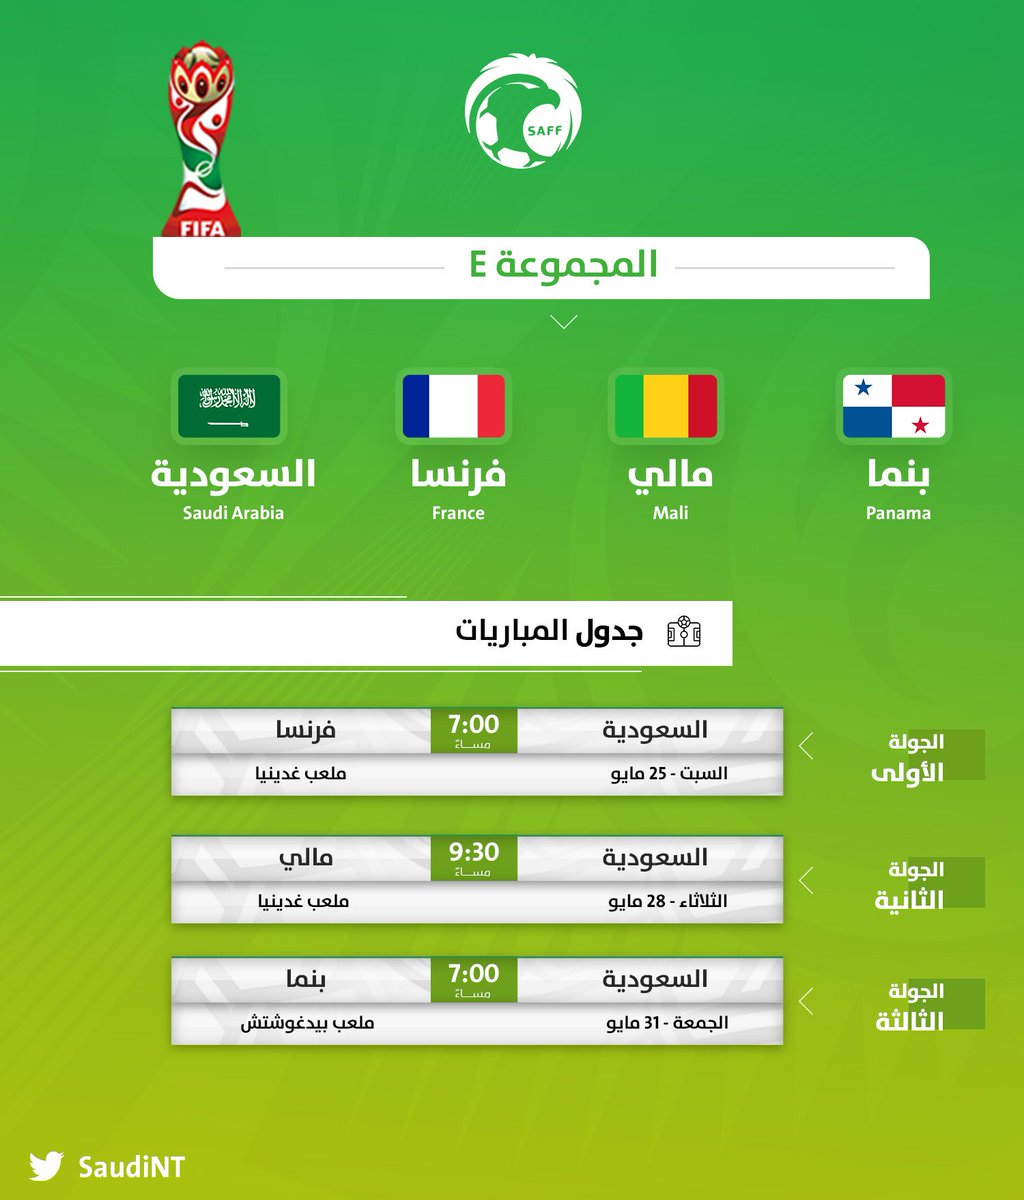 أخبار بالصورة تعرف على مواعيد مباريات المنتخب السعودي في كاس العالم للشباب 2019 شووت